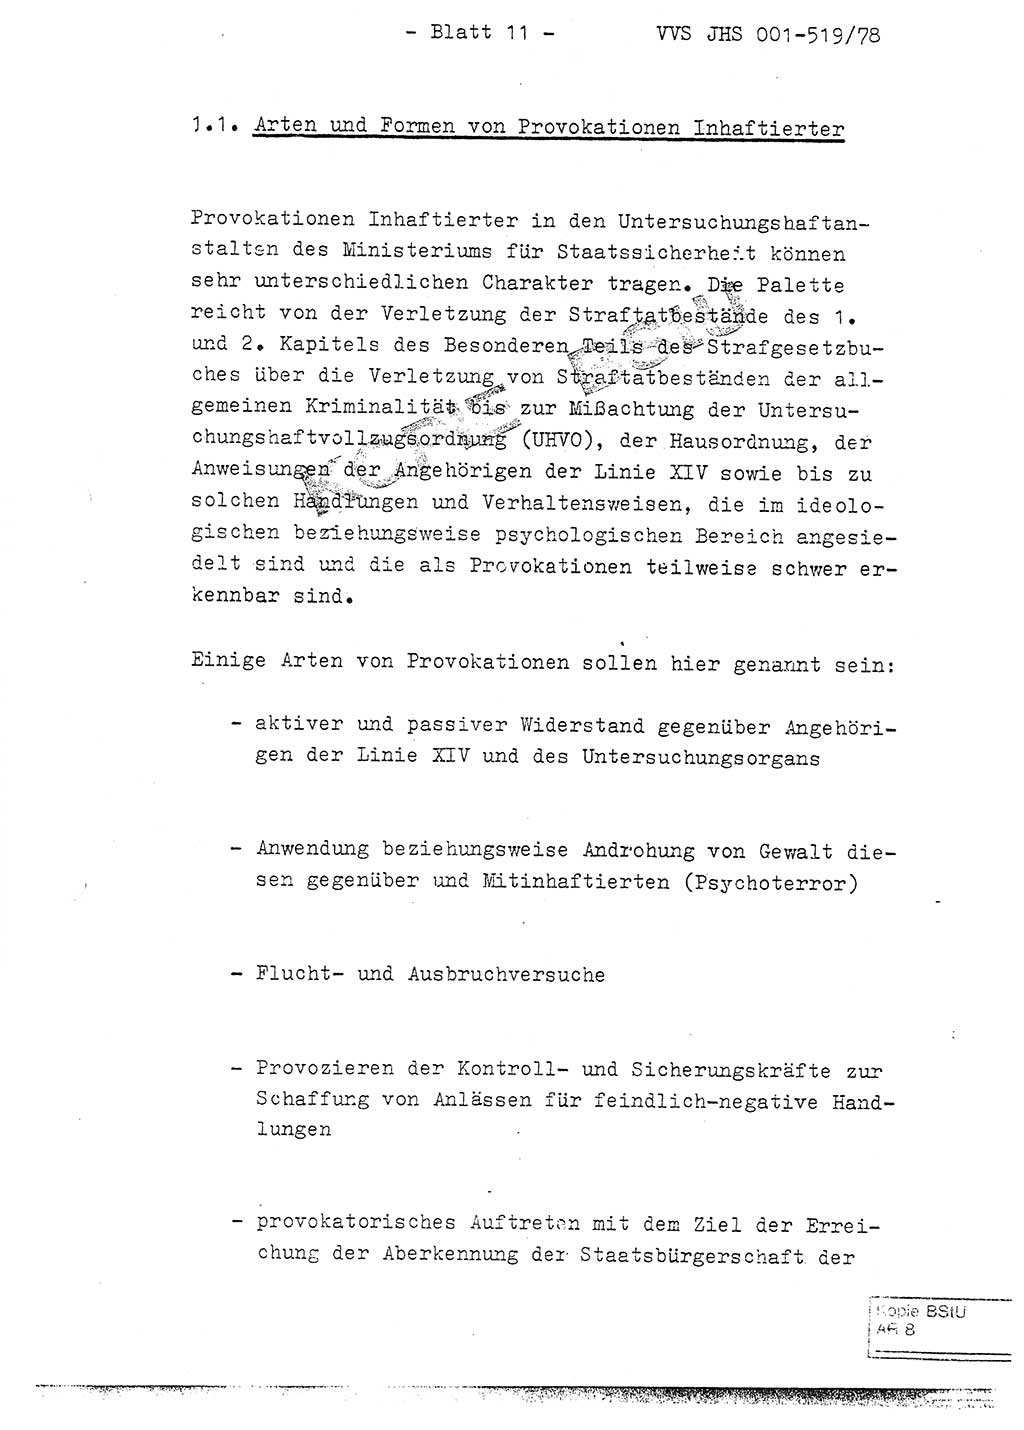 Fachschulabschlußarbeit Hauptmann Alfons Lützelberger (Abt. ⅩⅣ), Ministerium für Staatssicherheit (MfS) [Deutsche Demokratische Republik (DDR)], Juristische Hochschule (JHS), Vertrauliche Verschlußsache (VVS) 001-519/78, Potsdam 1978, Blatt 11 (FS-Abschl.-Arb. MfS DDR JHS VVS 001-519/78 1978, Bl. 11)